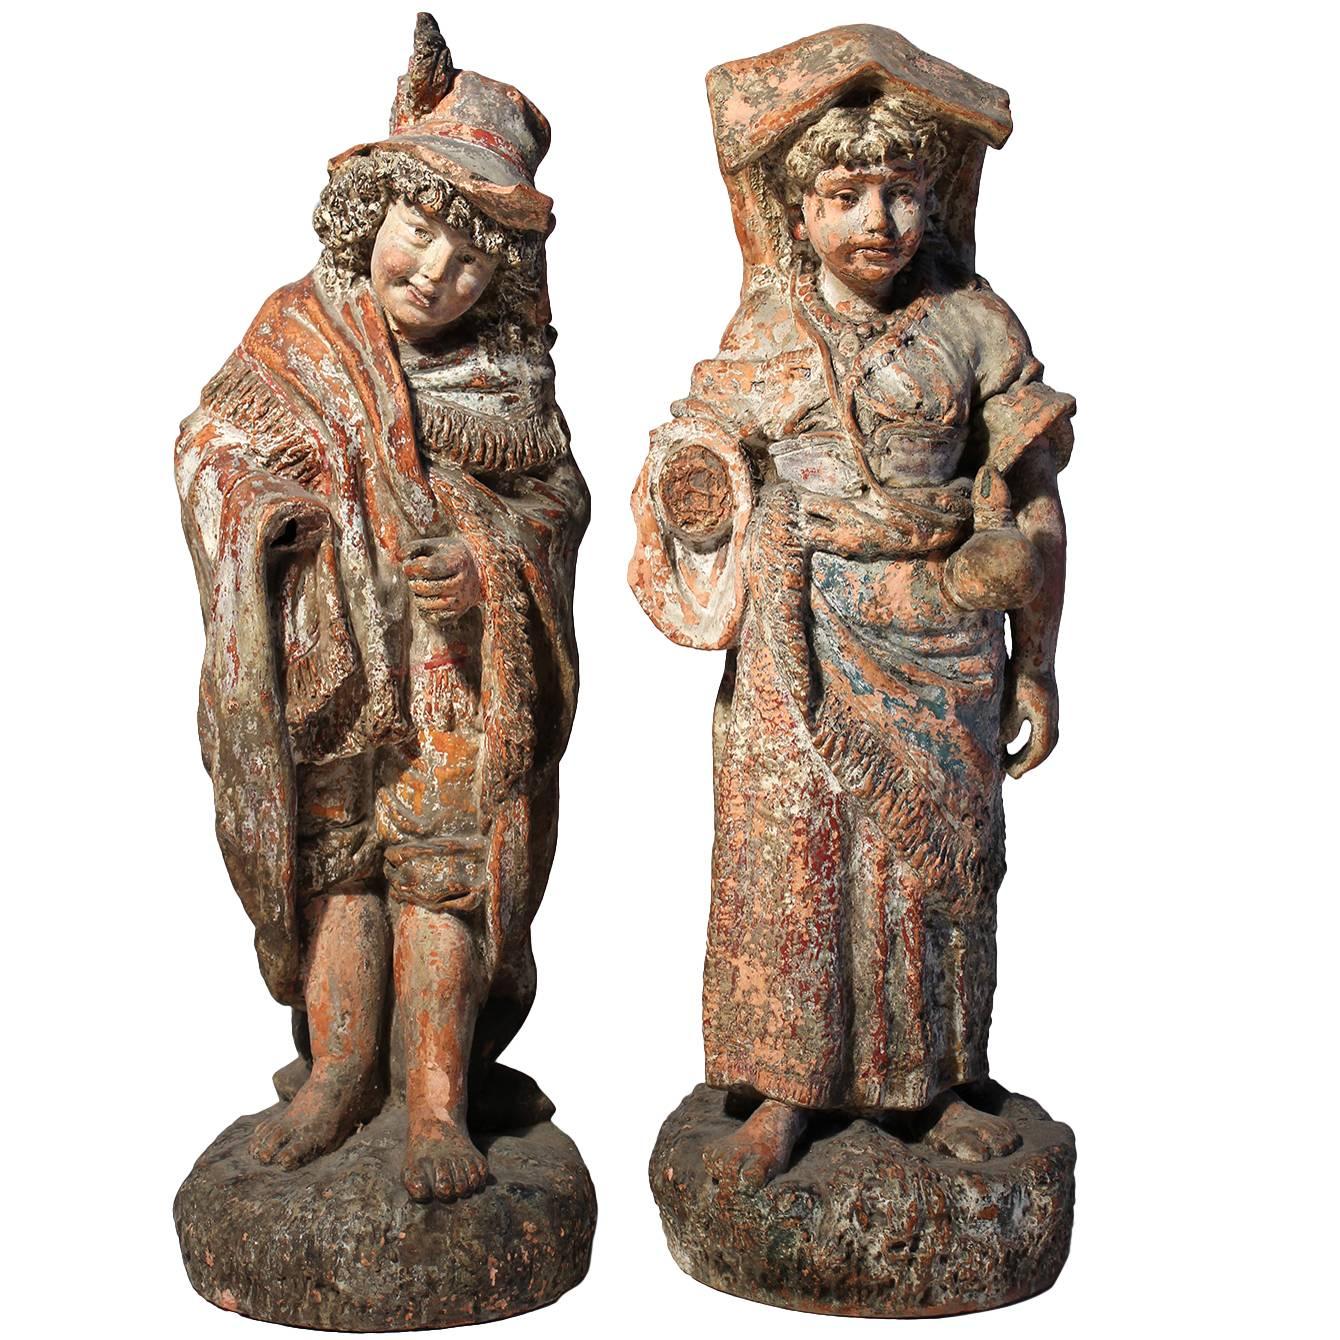 Antique Terracotta French Renaissance Garden Sculpture Statues For Sale